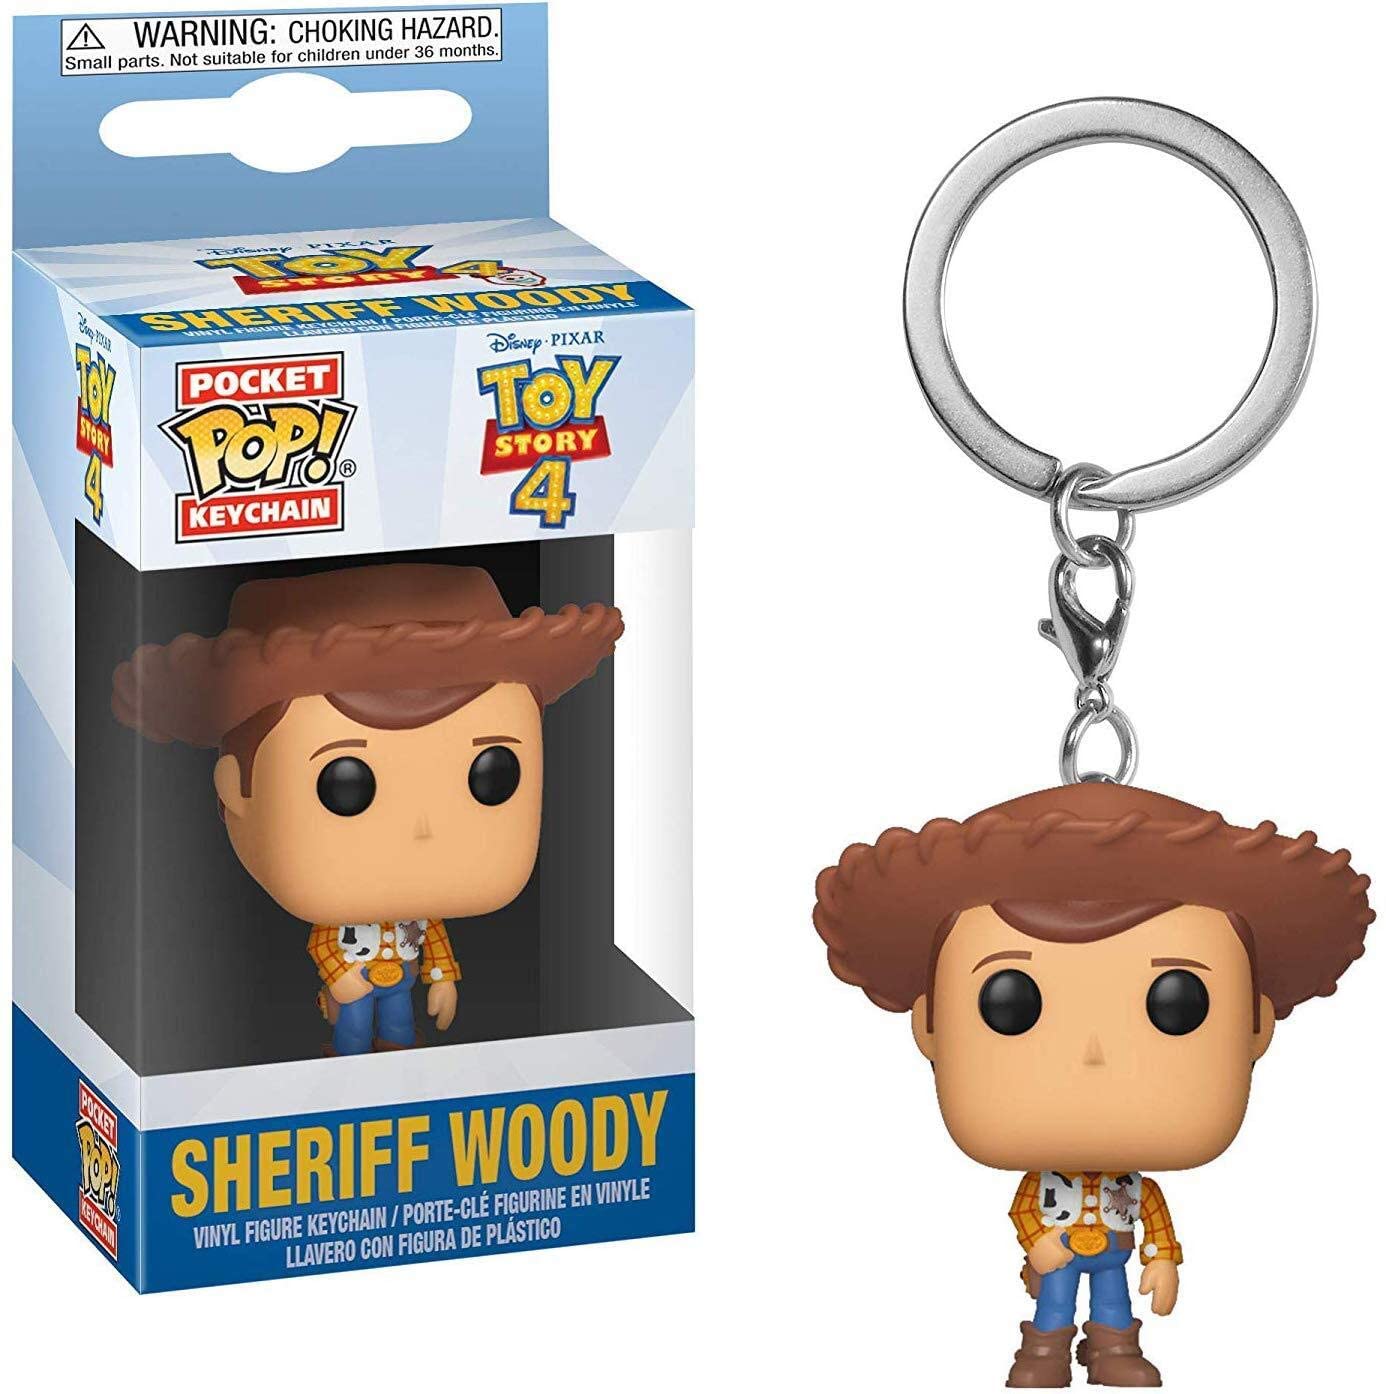 Toy Story 4: Sheriff Woody Funko Pop! Keychain